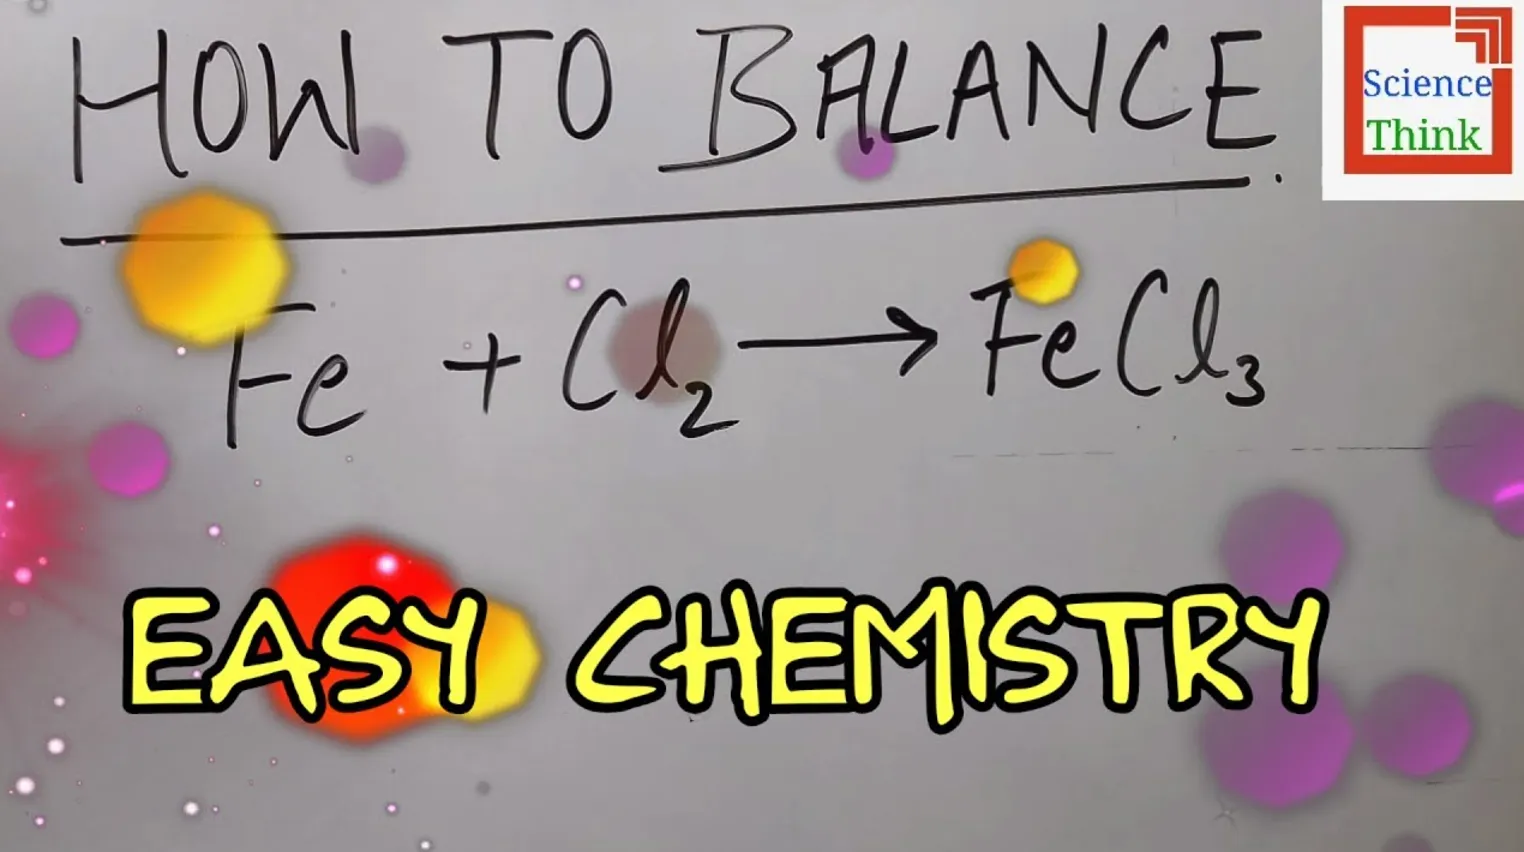 phản ứng hoá học tập fe cl2 → fecl3 vật tư công nghiệp và nó tế